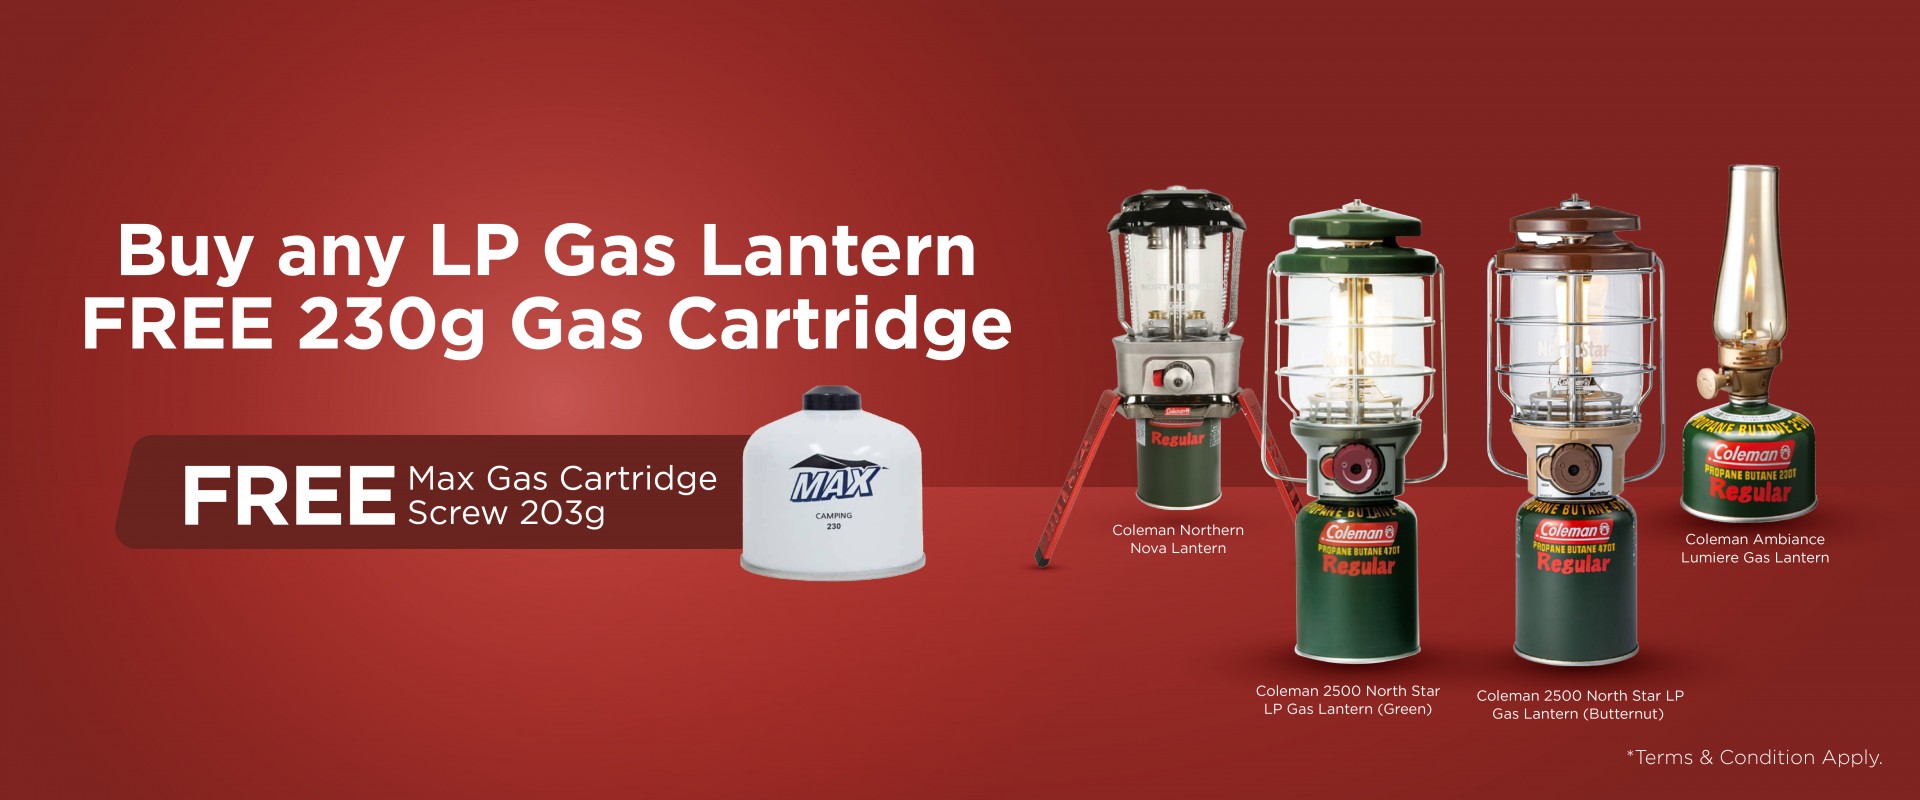 Buy LP Gas Lantern FREE 230g